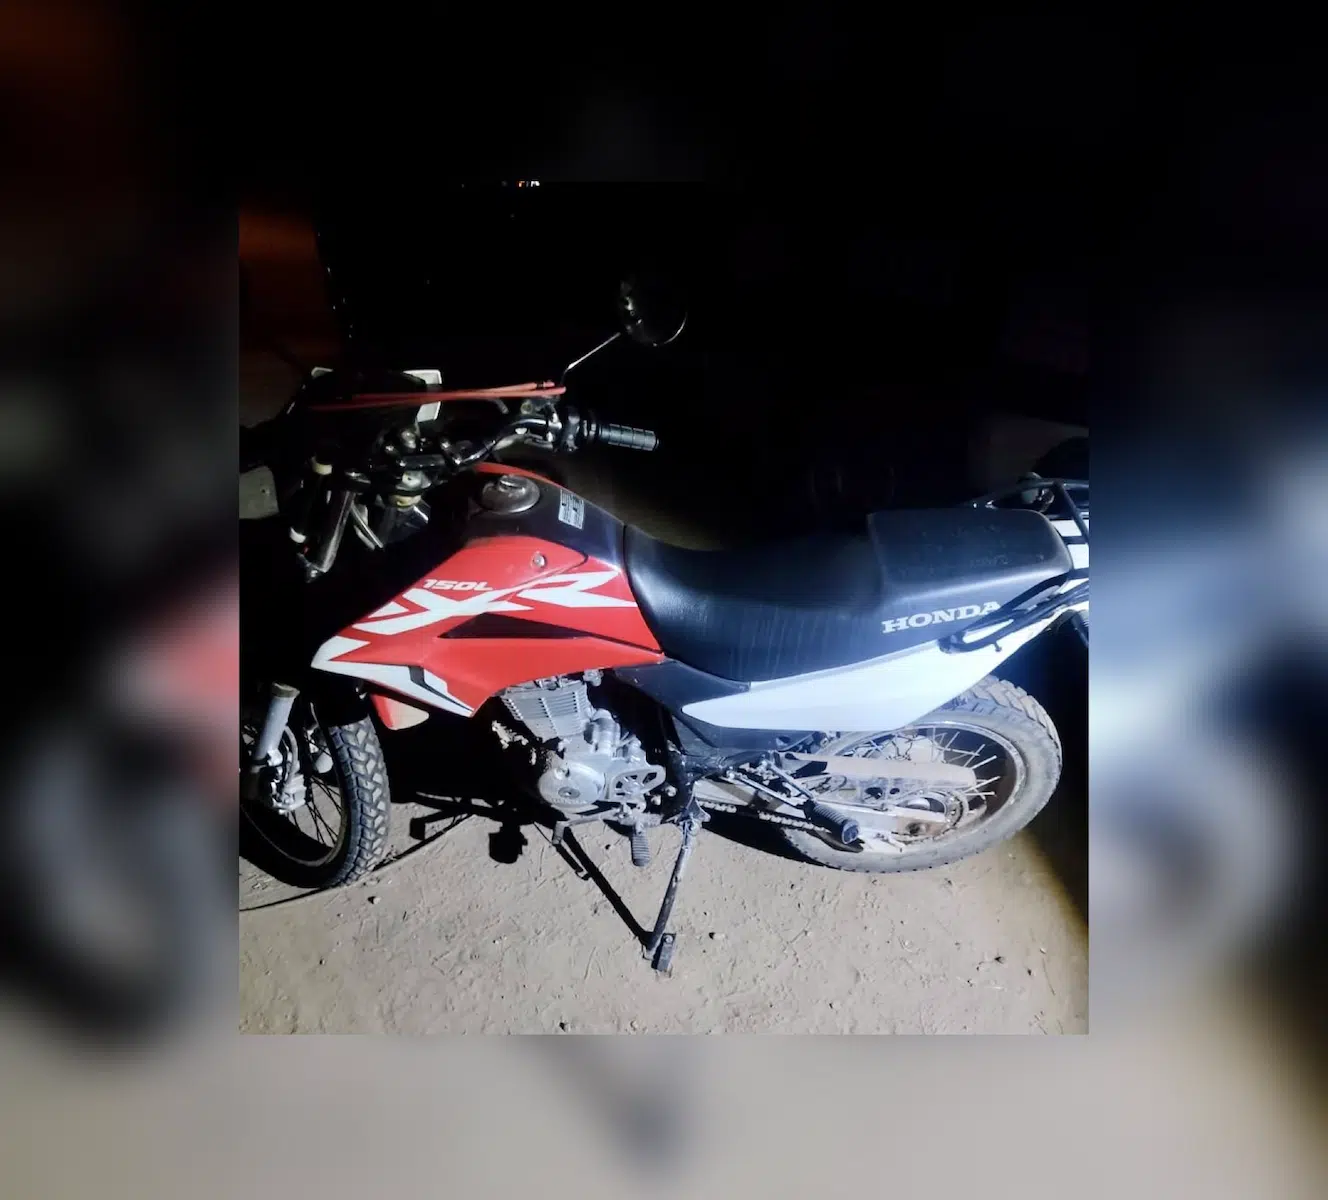 Motocicleta robada en Culiacán